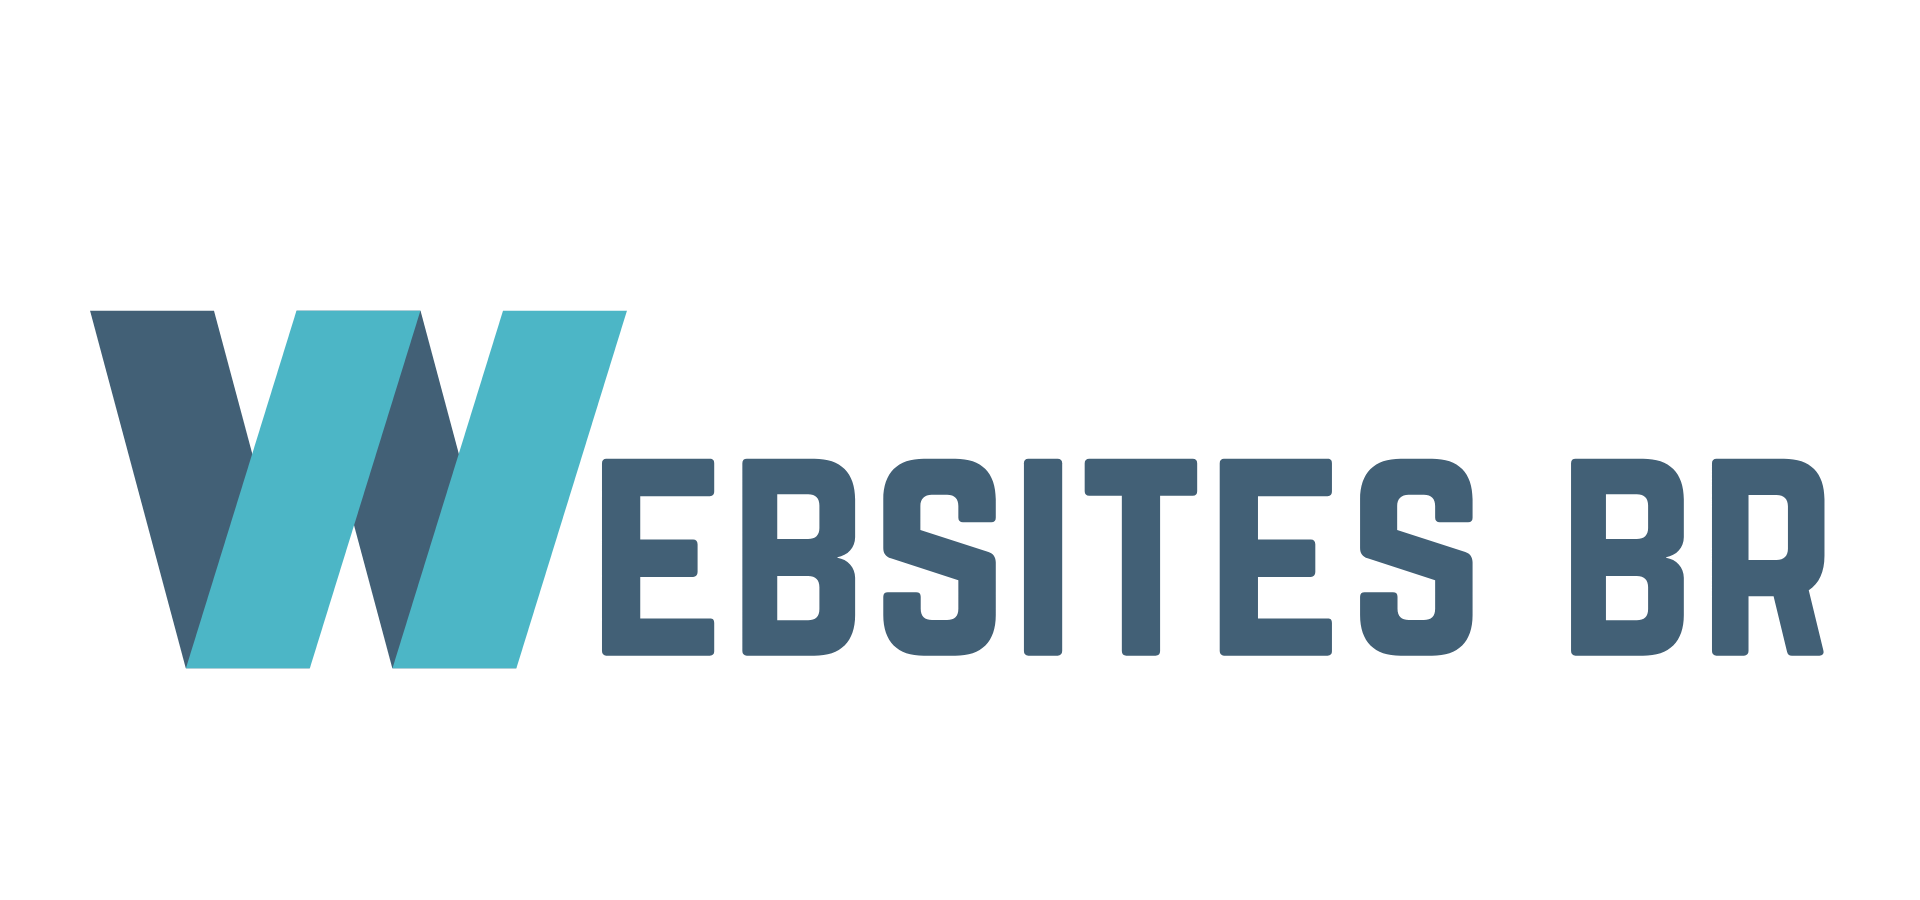 nova-logo-websitesbr